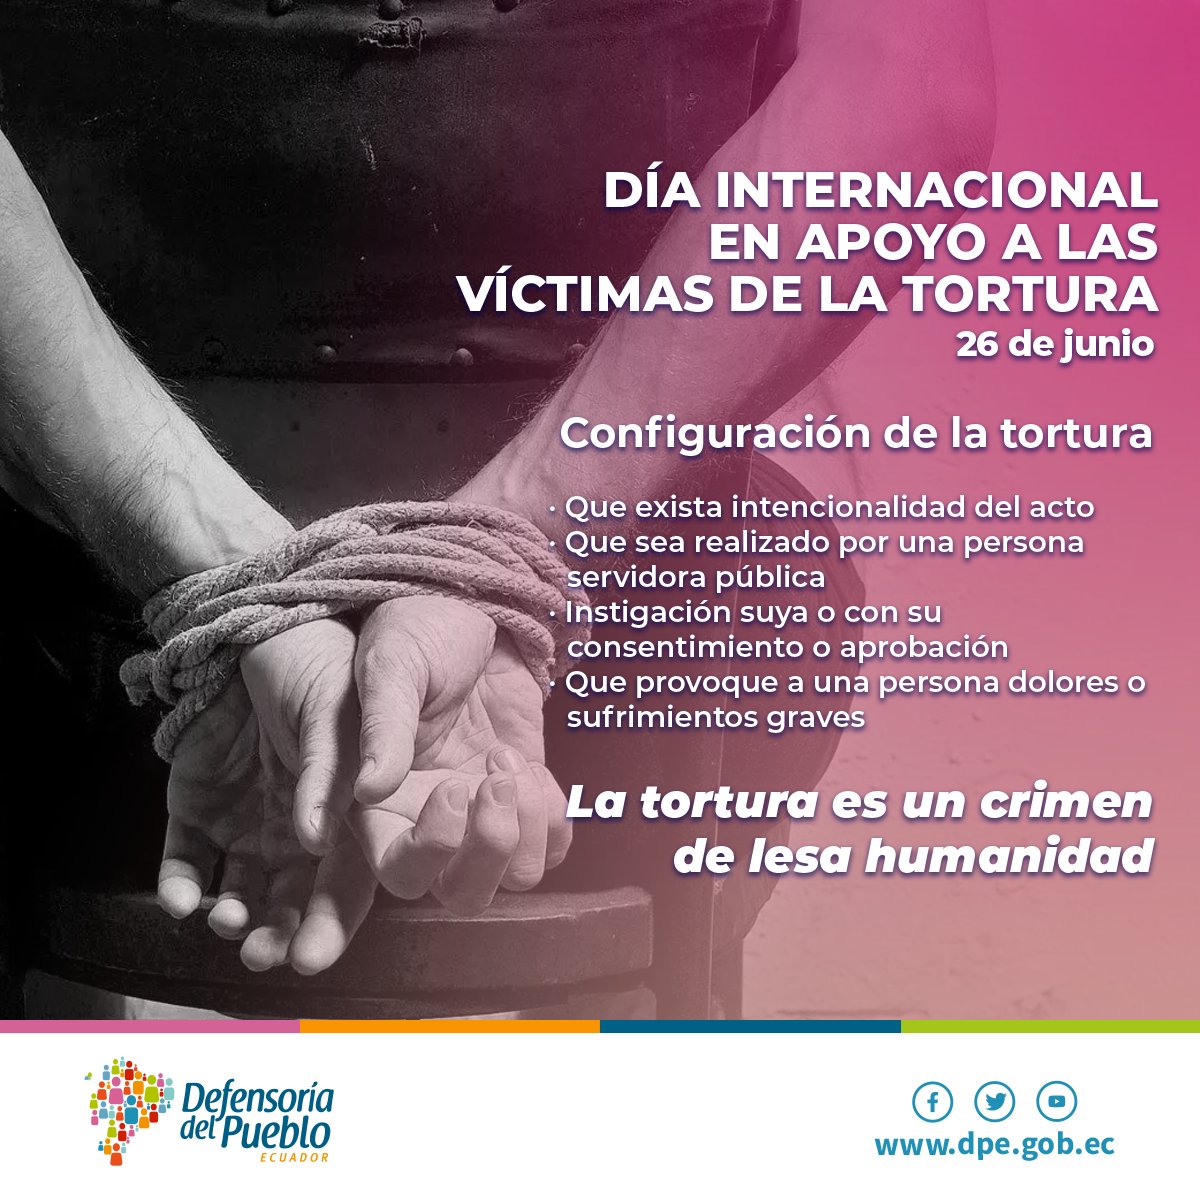 #26Junio | La #DefensoríaDelPueblo, en el marco del Día Internacional en Apoyo a las Víctimas de la Tortura, te invita a reflexionar sobre la tortura, las diversas formas y mecanismos de prevención y reparación. 
¡Por una vida libre de Tortura! 
#DelitoDeLesaHumanidad